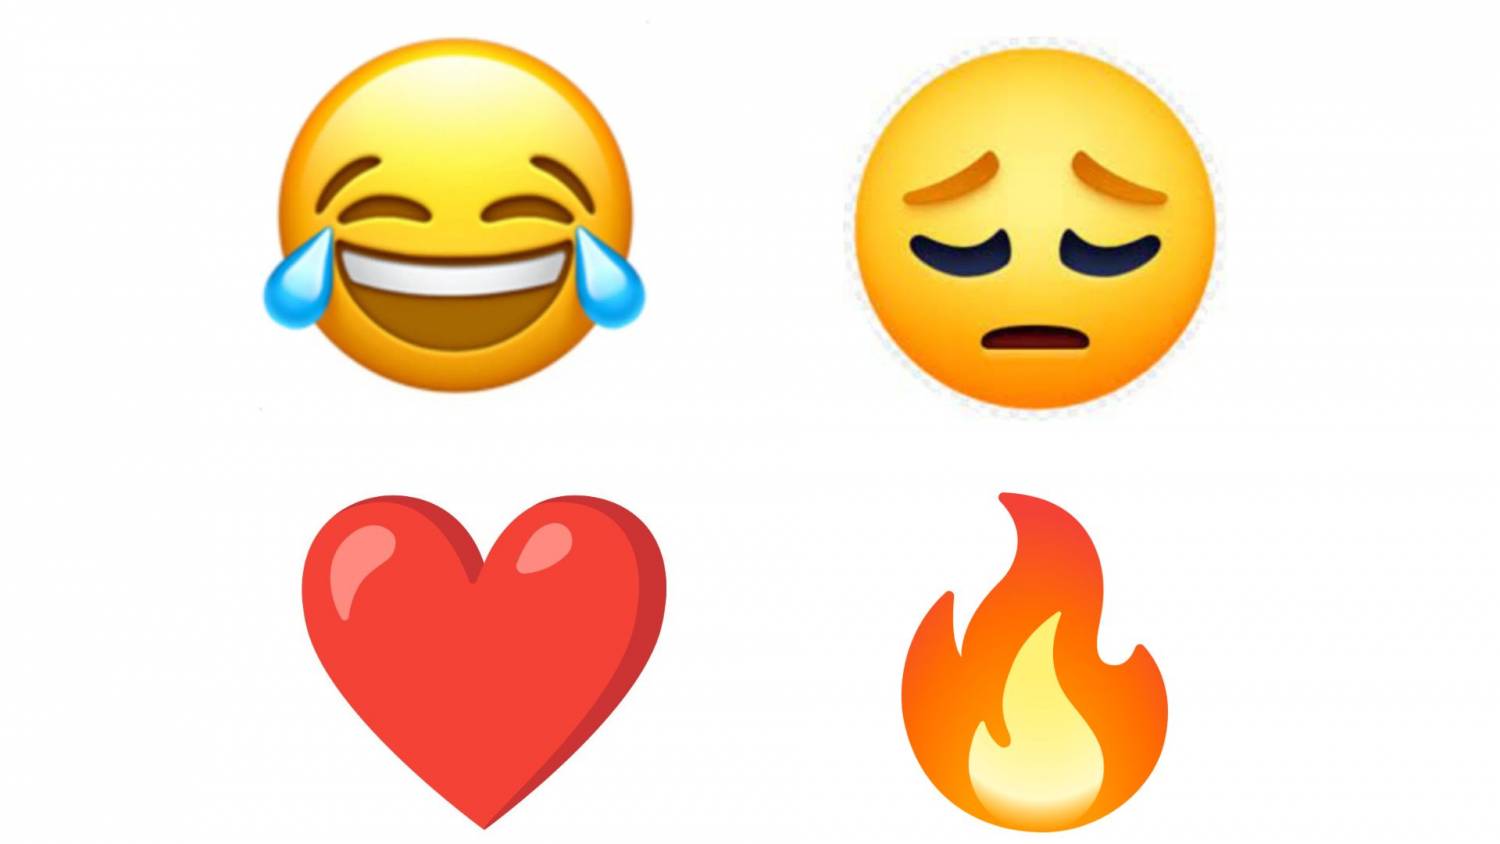 Cuáles son los emojis más usados y qué significan